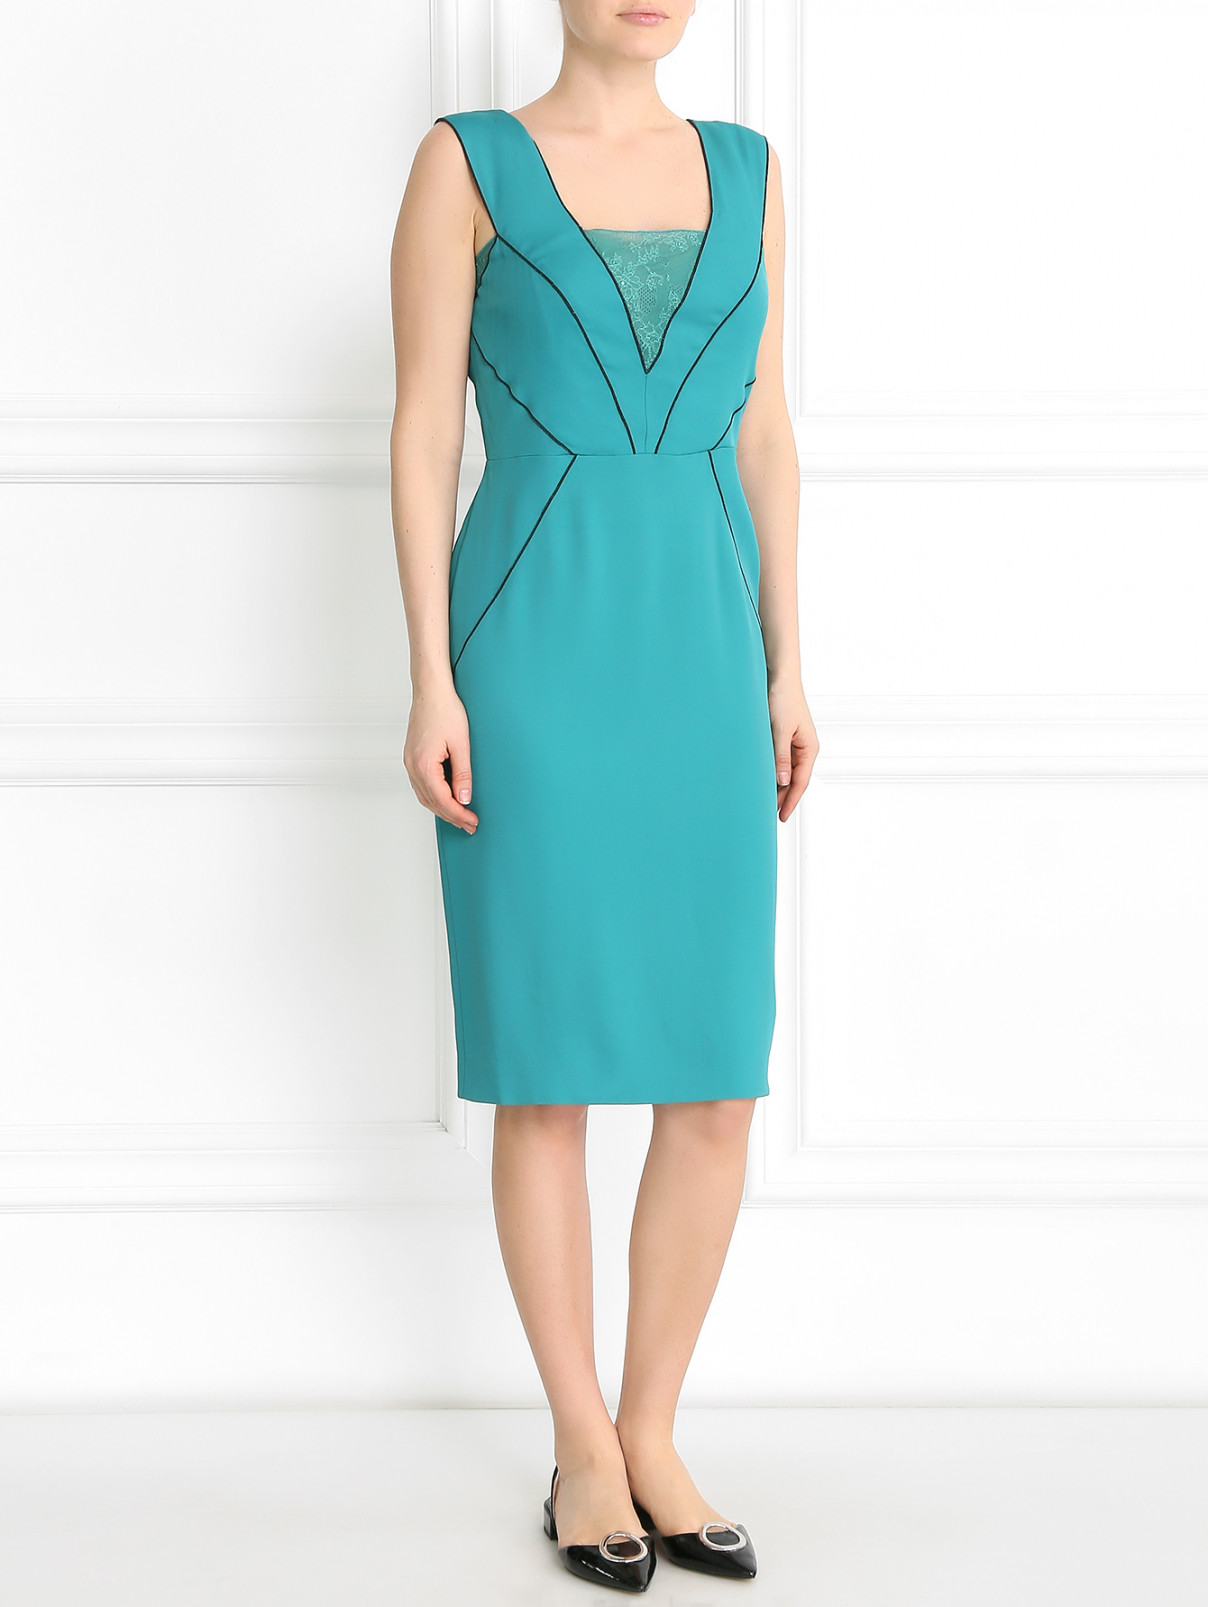 Платье с контрастной окантовкой и вставкой из кружева Alberta Ferretti  –  Модель Общий вид  – Цвет:  Зеленый